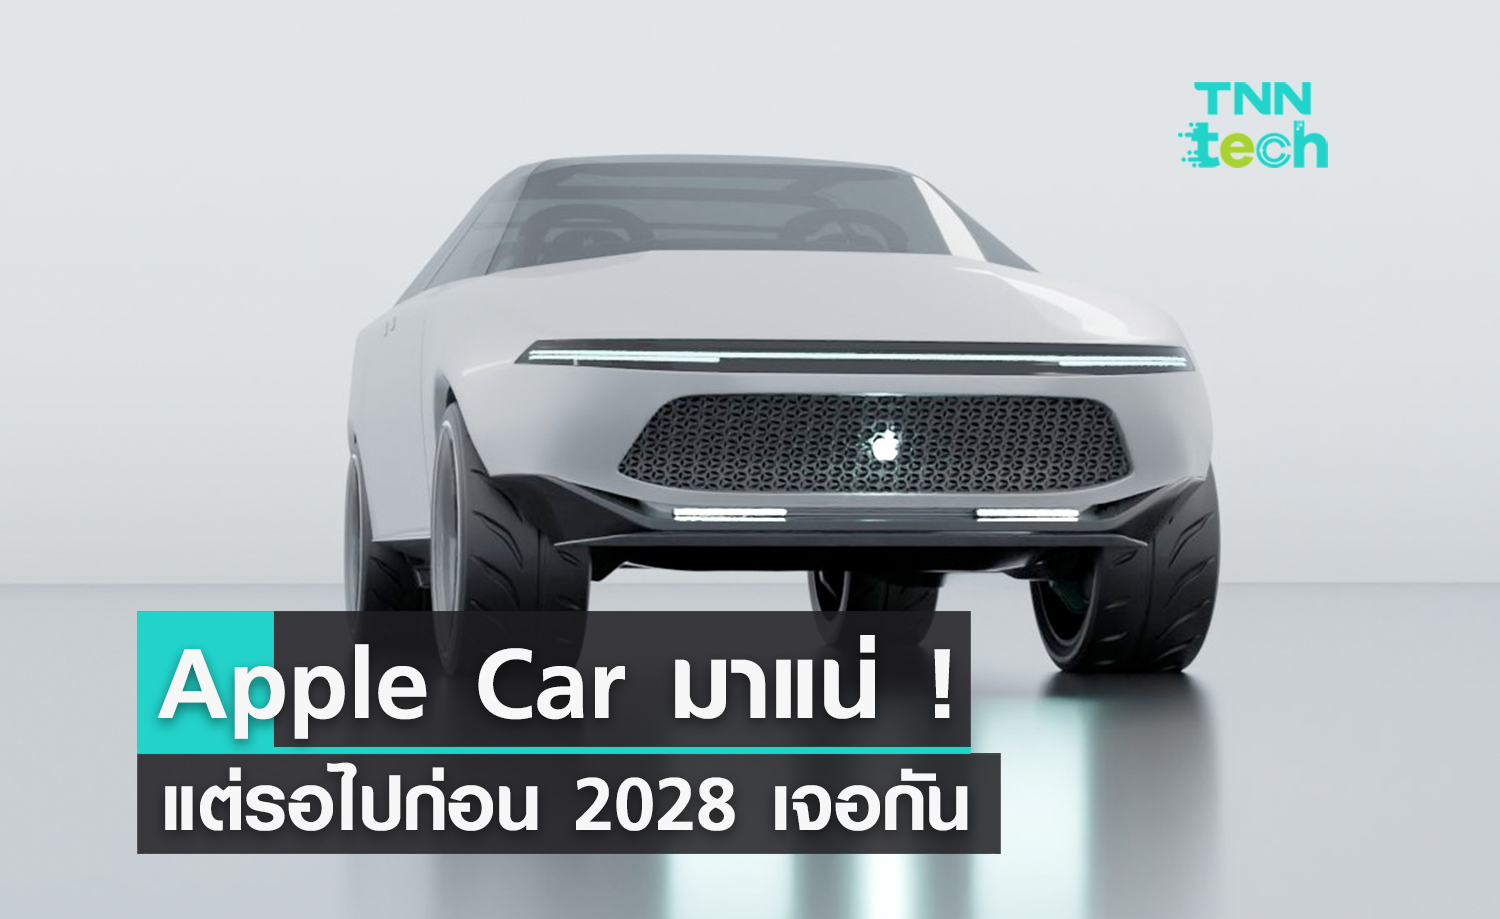 Apple Car มาแน่ แต่รอไปถึง 2028 ก่อนนะ หลังเคยบอกจะเปิดตัว 2026